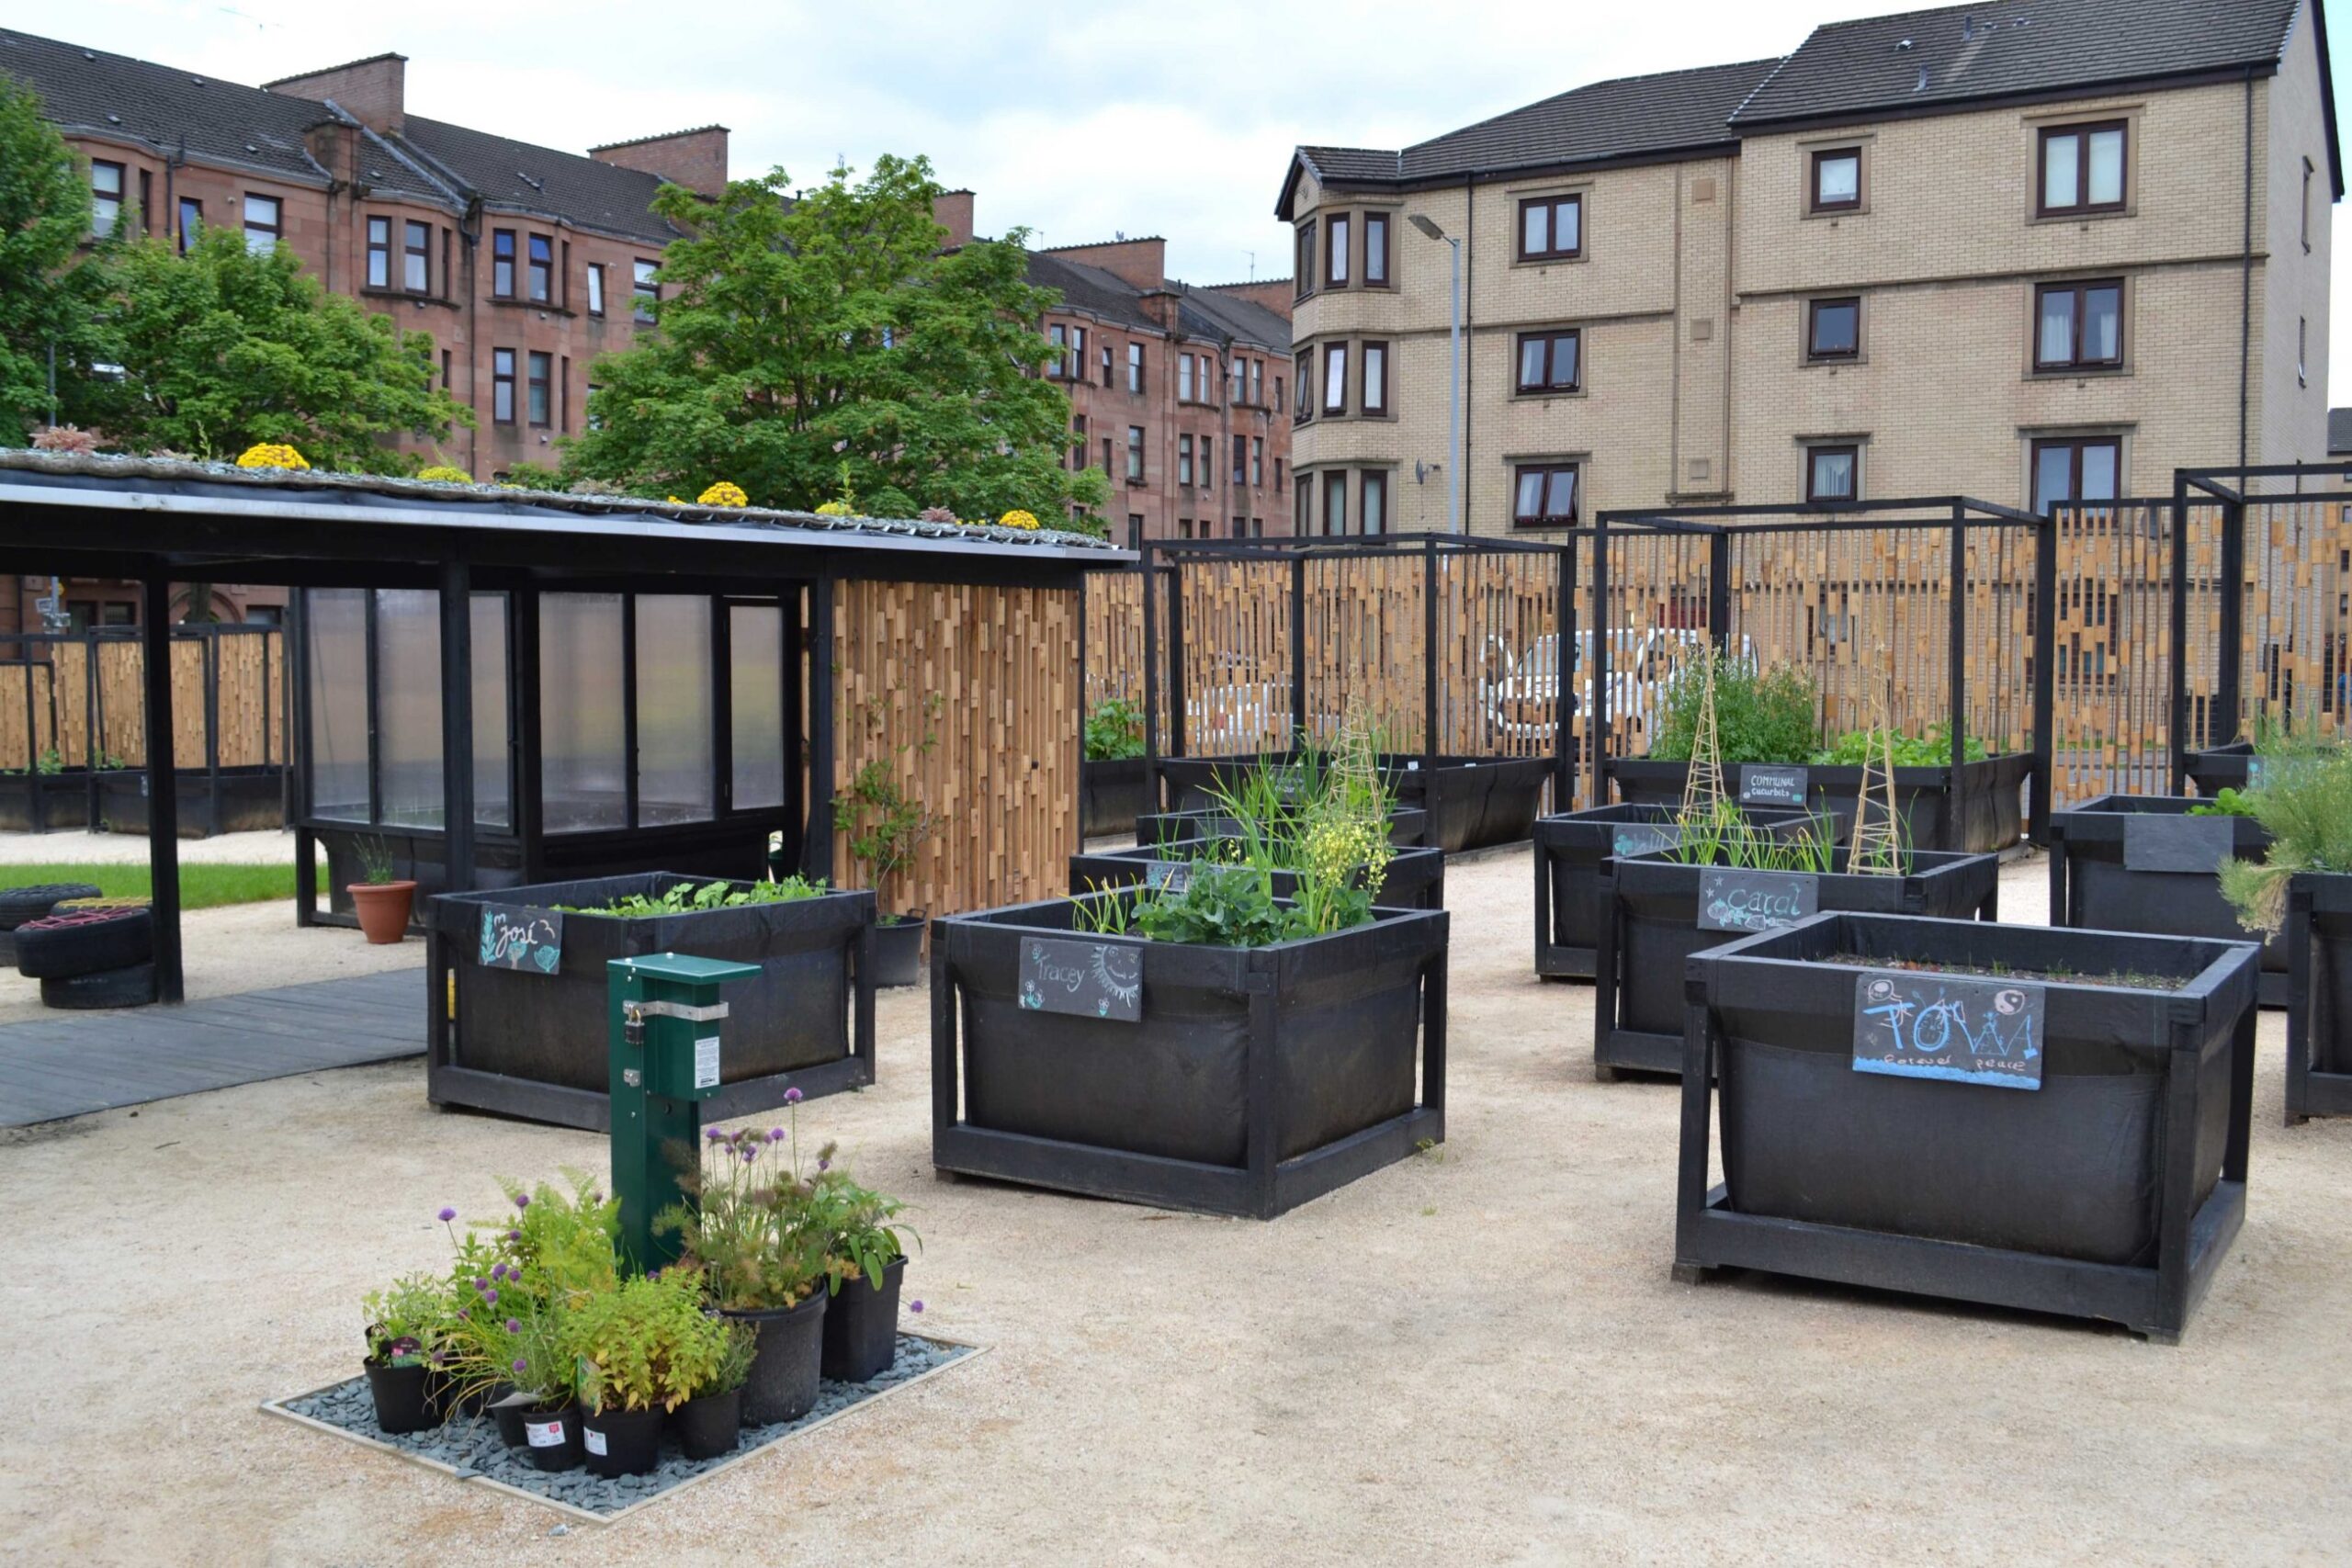 Community garden in North Glasgow , designed by ERZ architects.